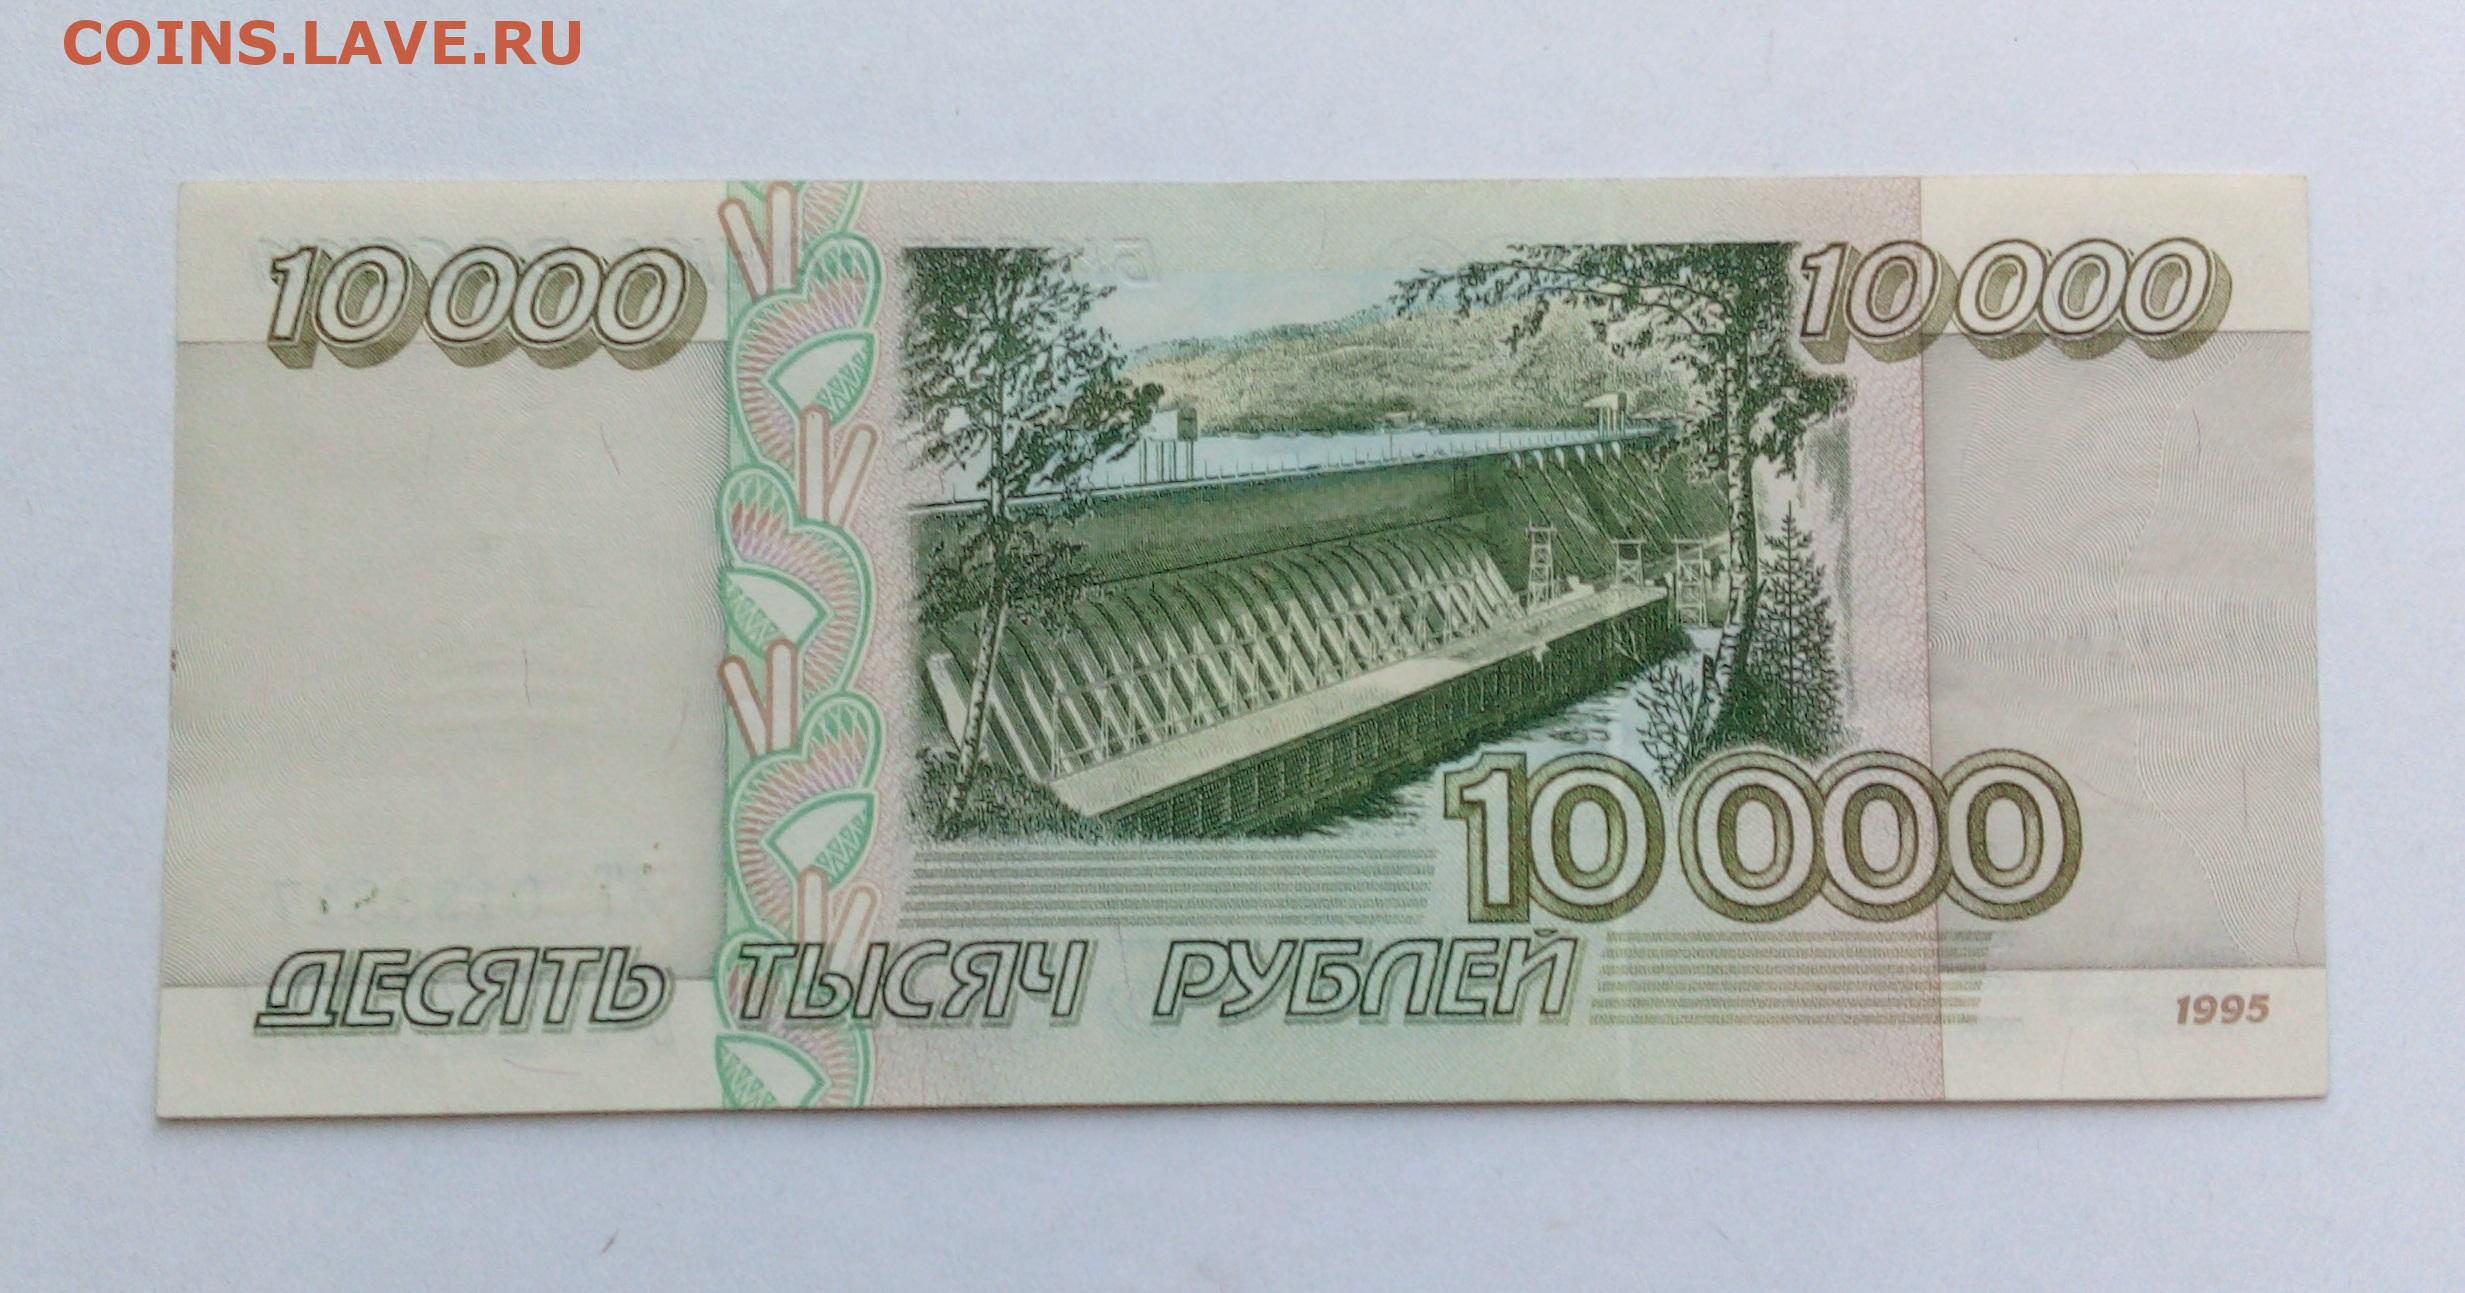 Купюра 10 тыс. 10000 Рублей 1995. 10 000 Рублей купюра 1995. 10000 Рублей бумажные 1995. 10 000 Рублей купюра.